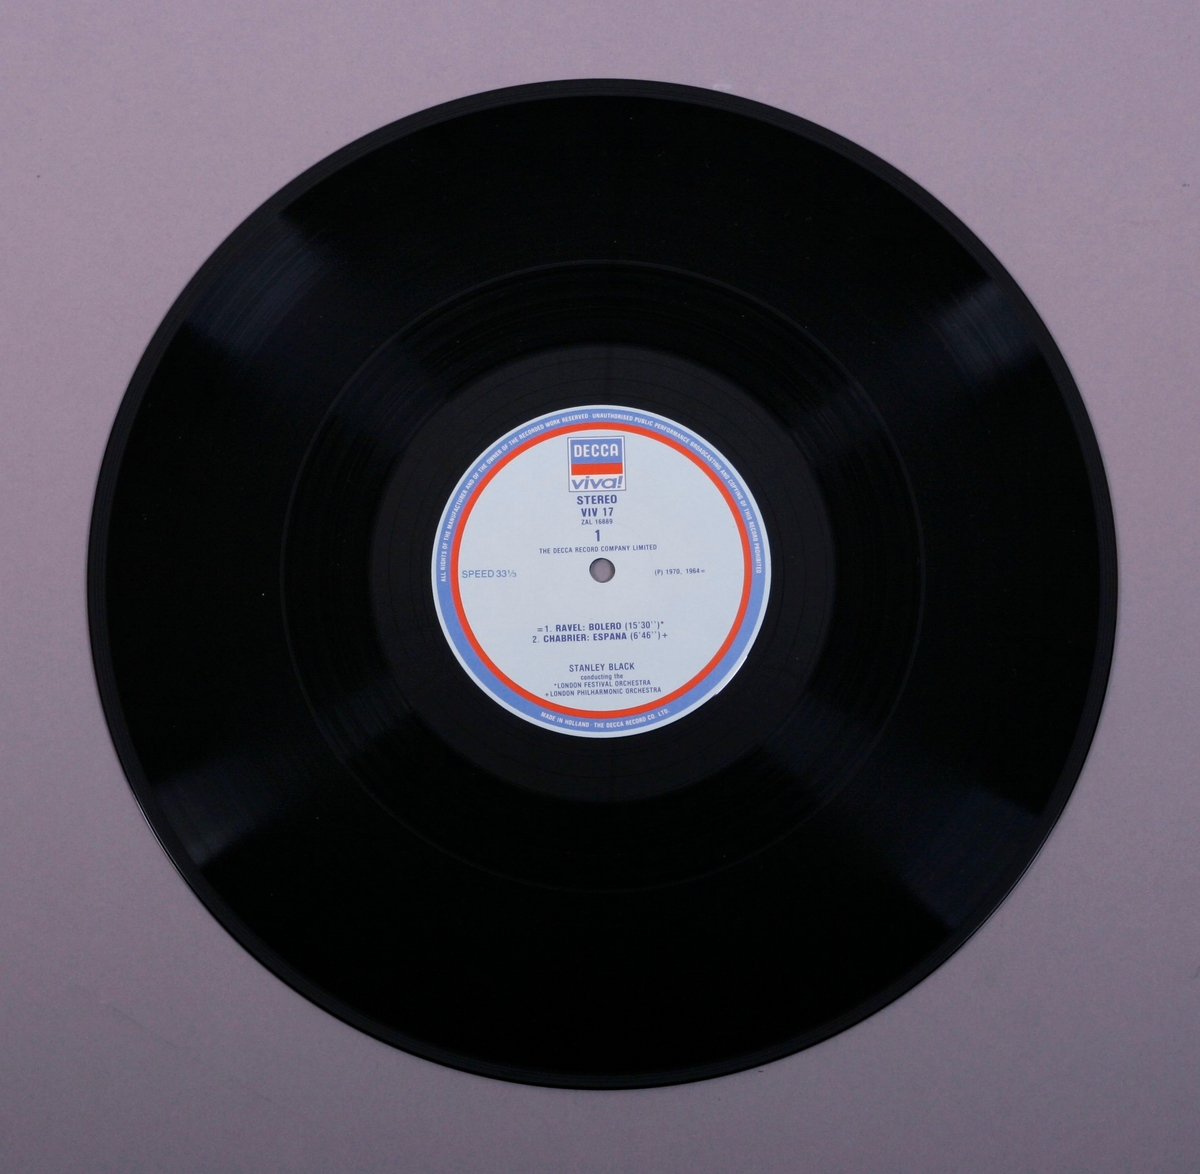 Grammofonplate i svart vinyl og plateomslag i papp. Plata ligger i en plast- og papirlomme.